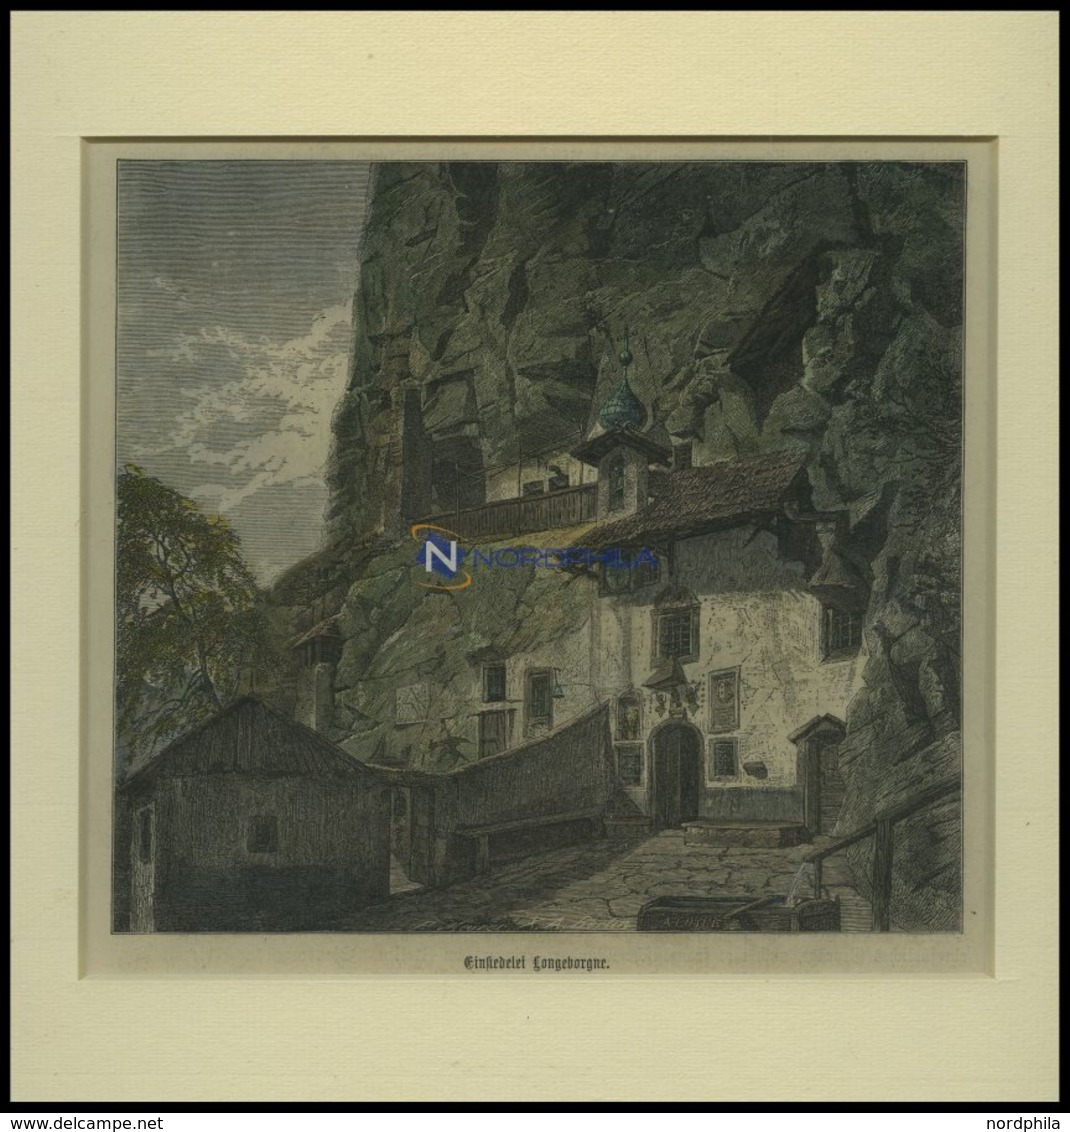 BORGNE: Einsiedelei Longeborgne, Kolorierter Holzstich Um 1880 - Lithographien